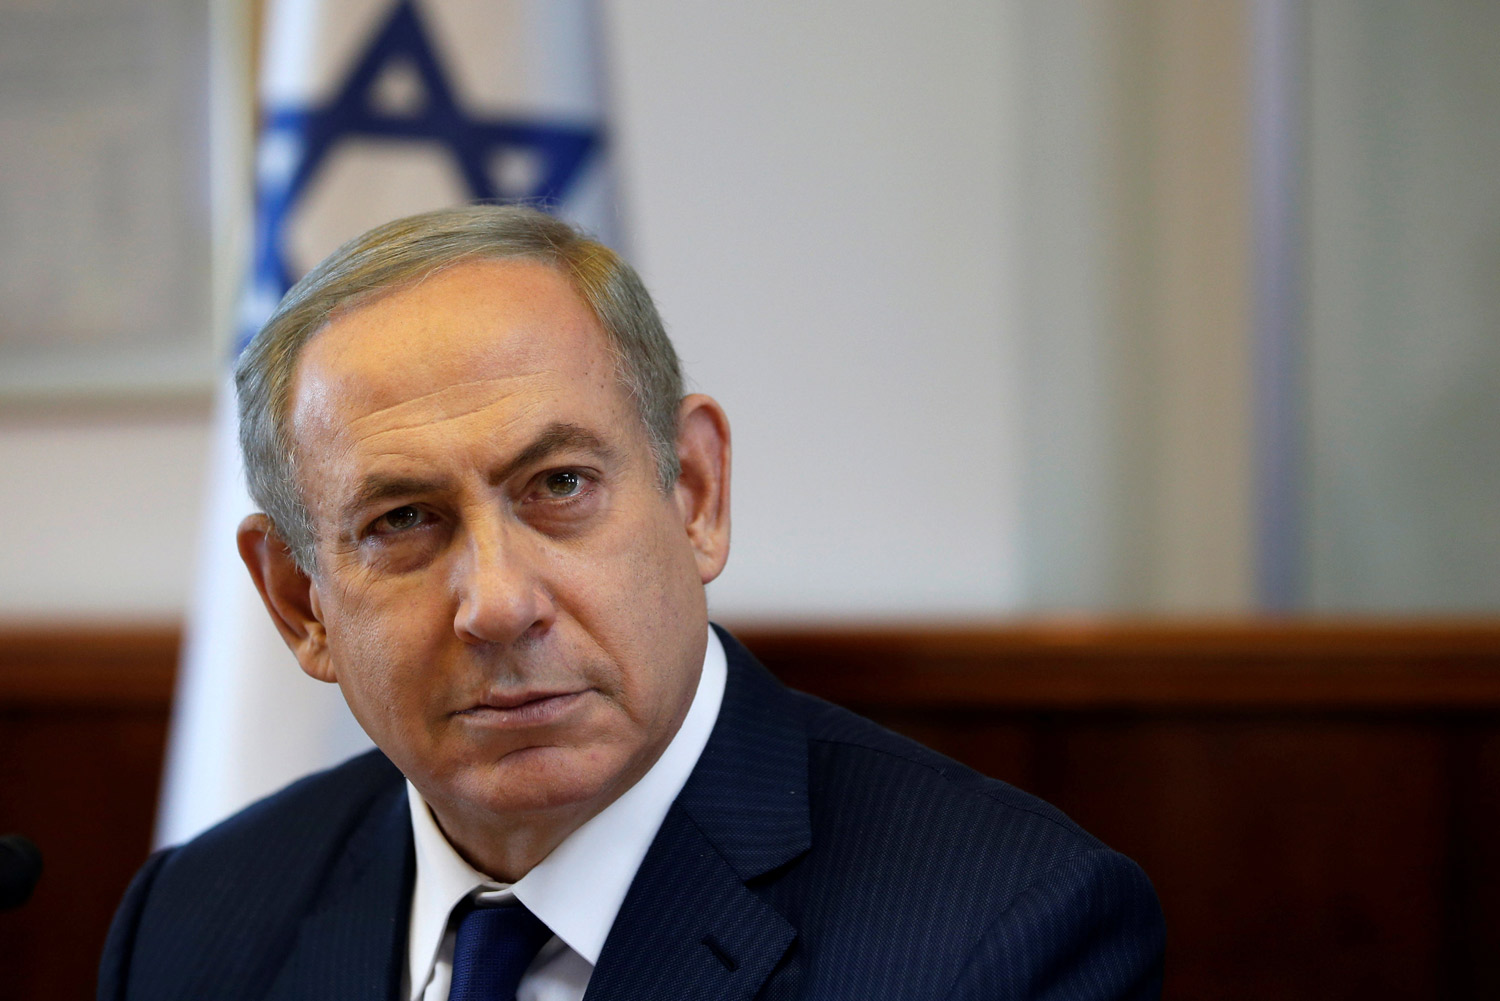 Extraen varios pólipos pequeños a Netanyahu en revisión médica de rutina